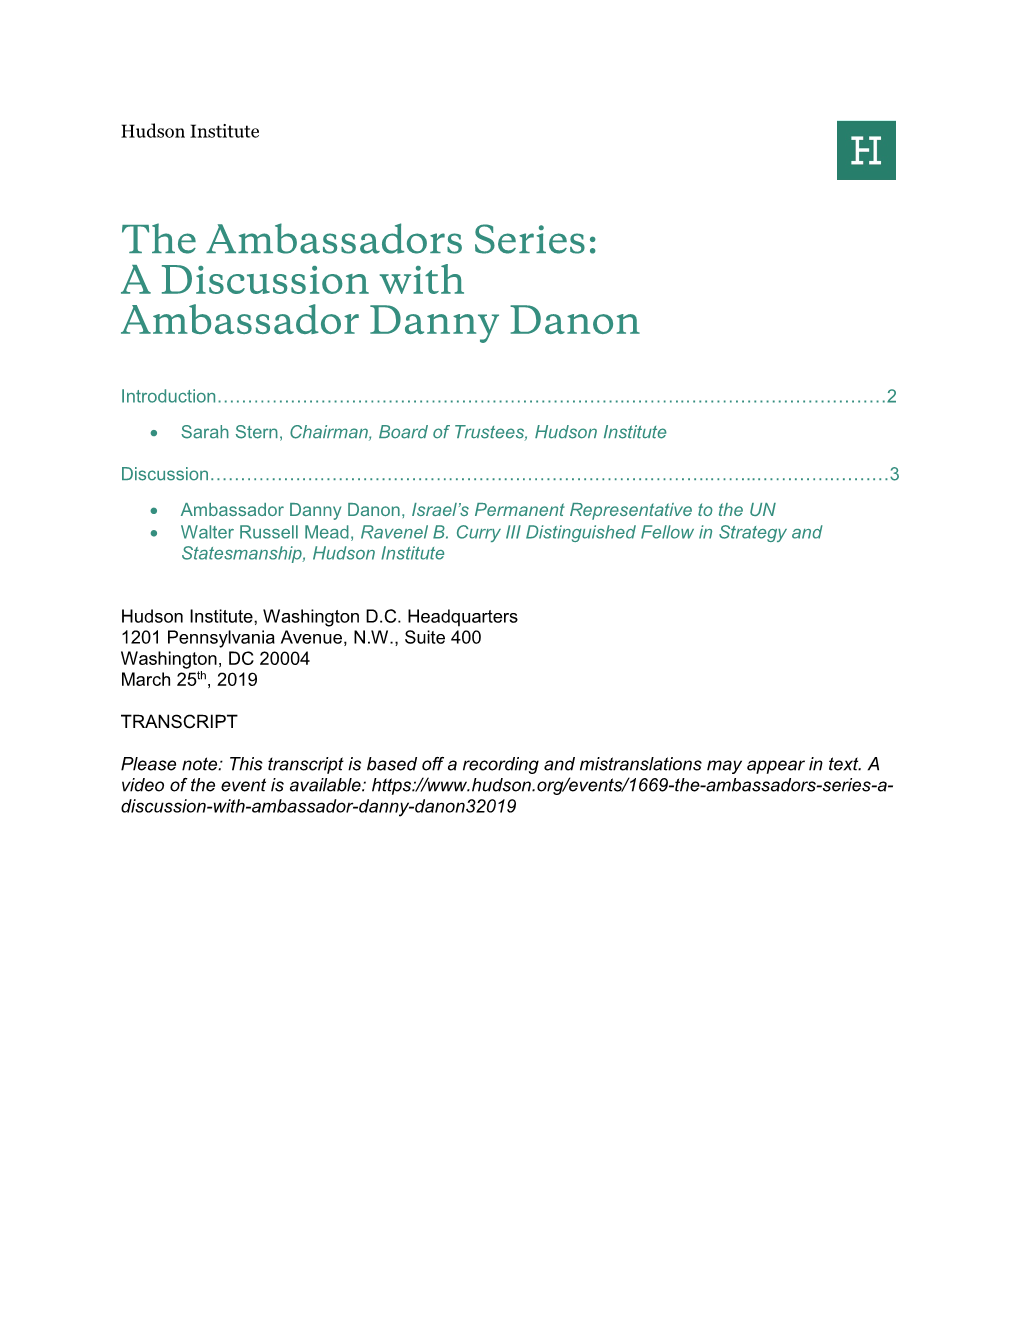 A Discussion with Ambassador Danny Danon